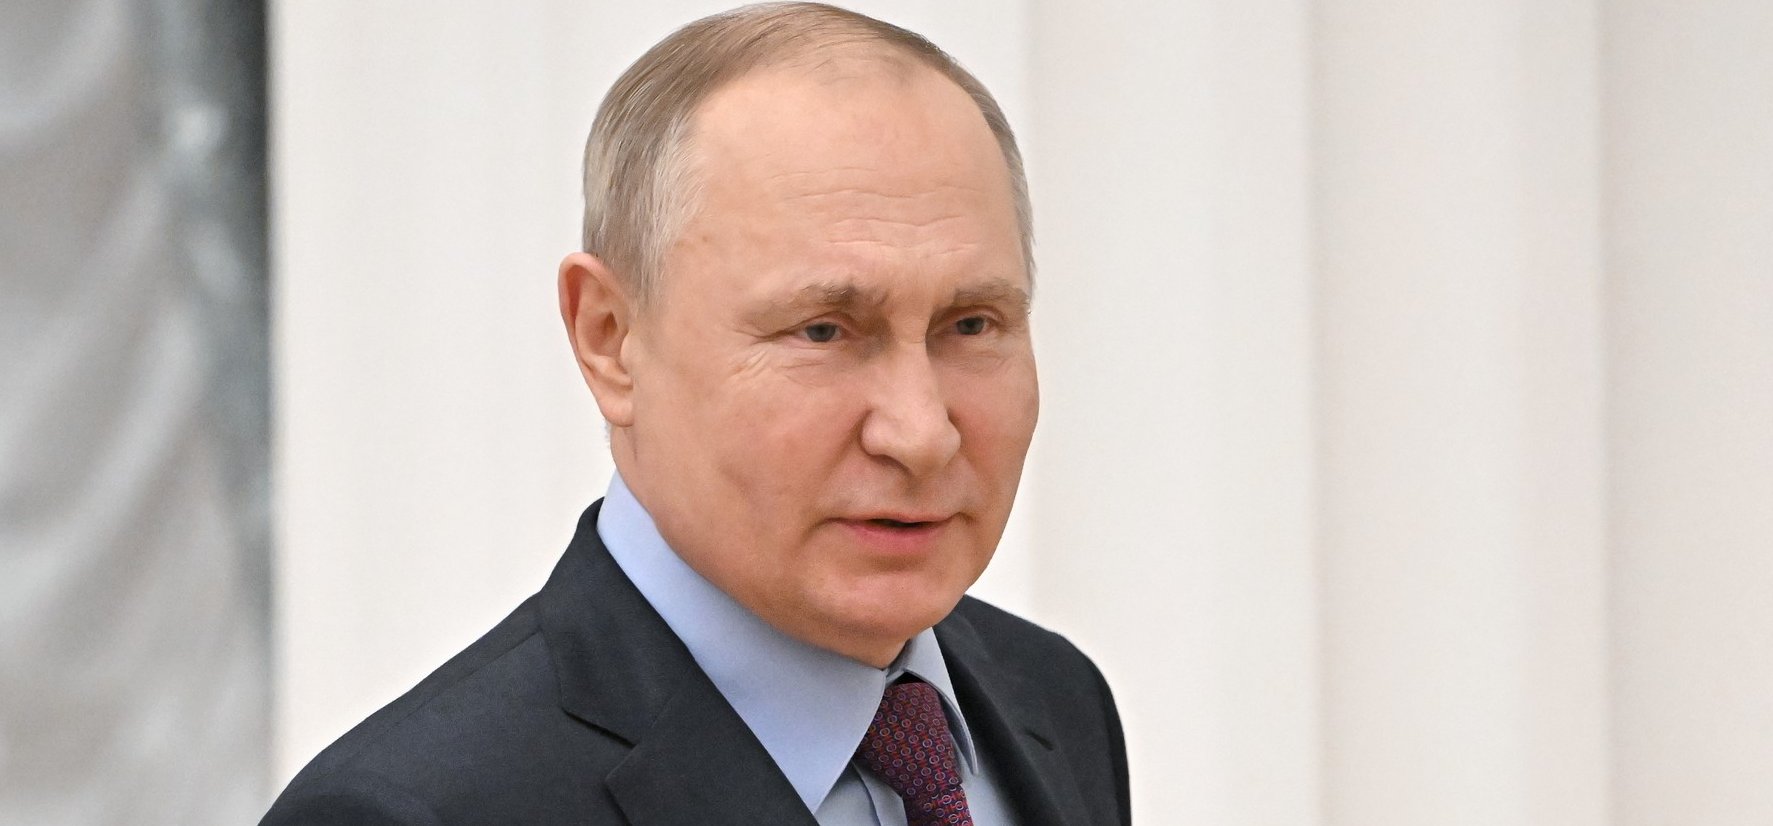 Keményen léphetnek fel Putyin ellen – így csak Oroszországban lenne biztonságban